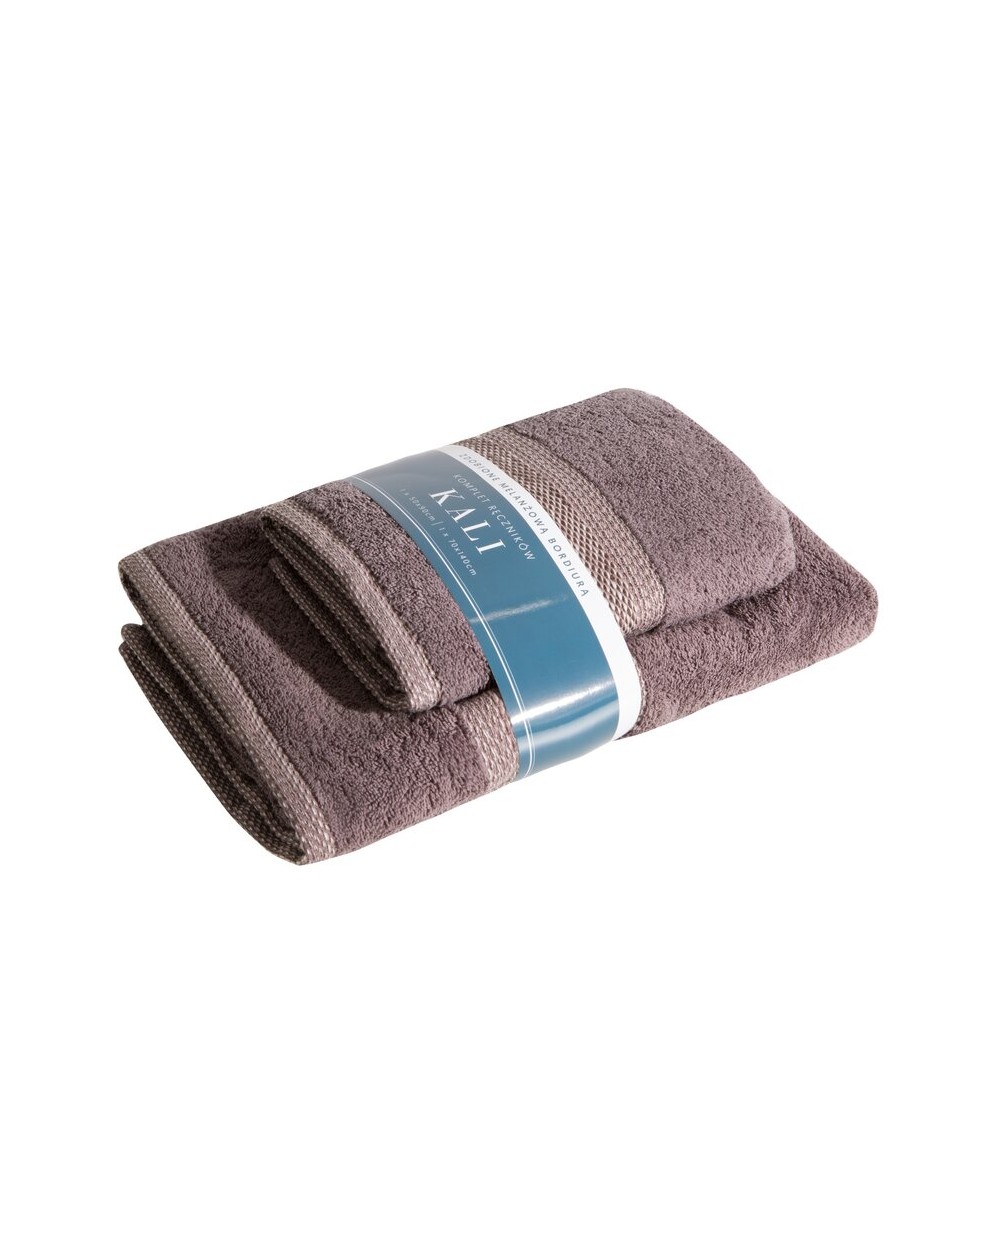 Ręcznik bawełana 50x90 + 70x140 kpl 2 szt Kali brązowy Eurofirany 